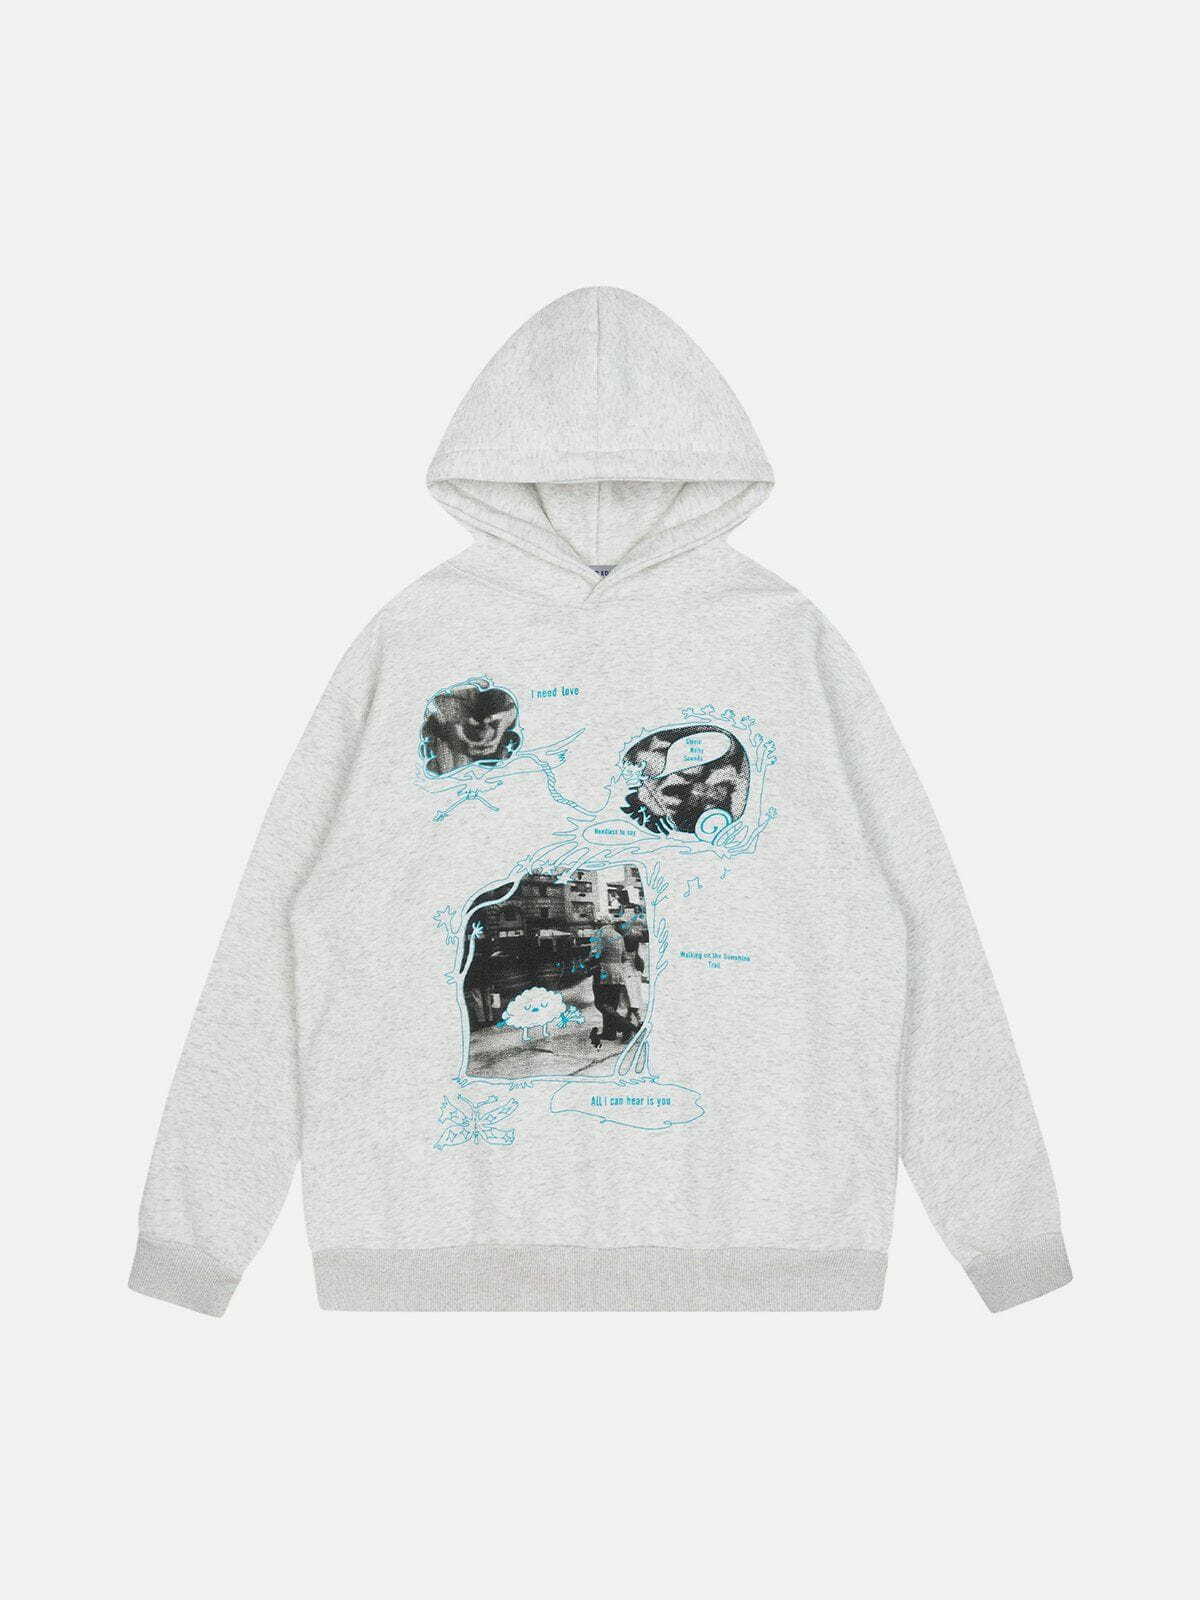 sliced print pullover hoodie edgy black & white streetwear 1104